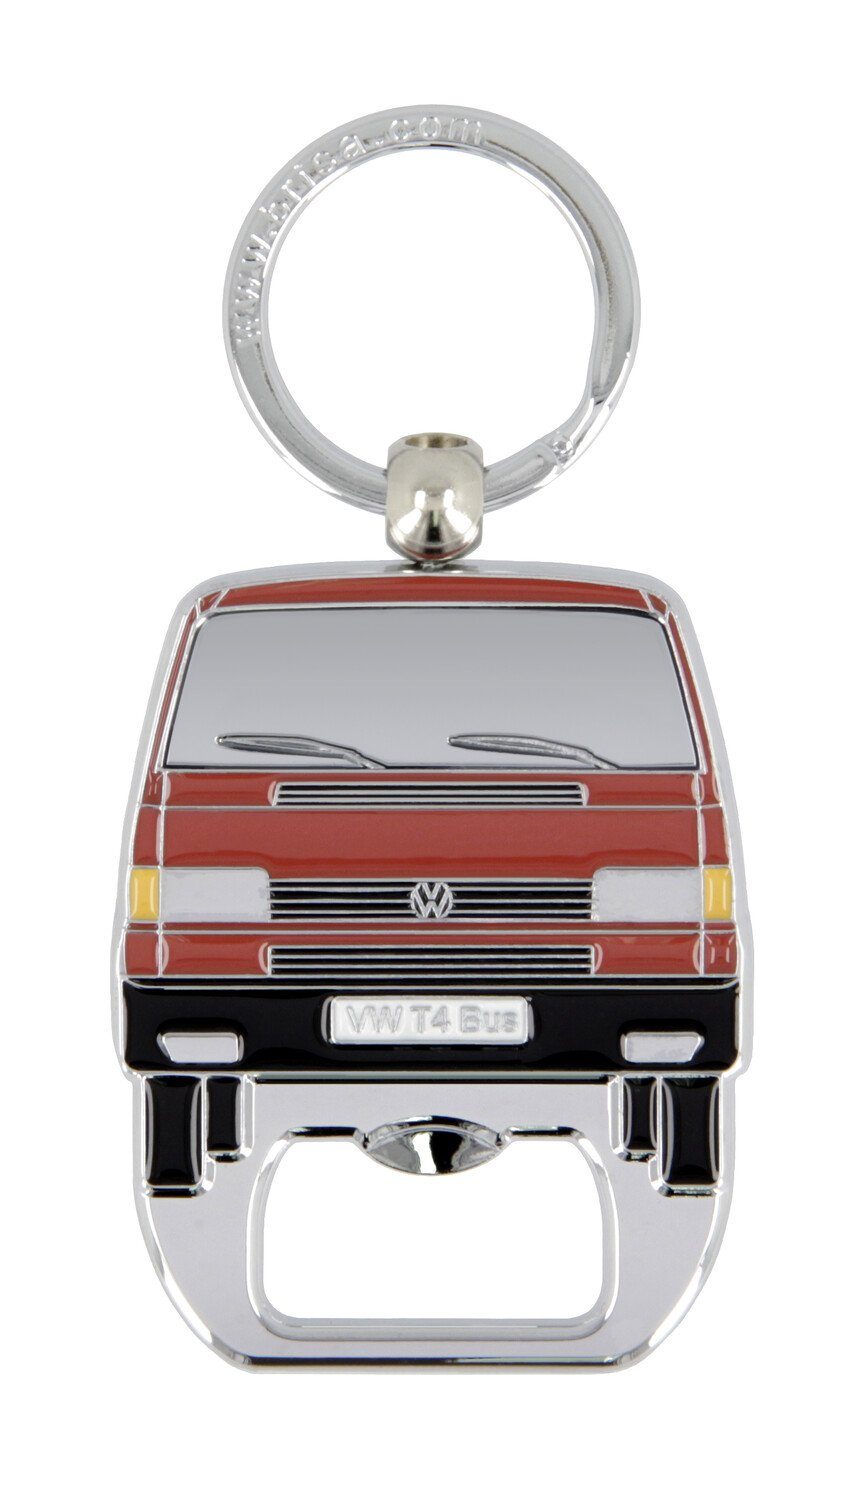 VW Collection by BRISA Schlüsselanhänger Volkswagen Schlüsselring mit Flaschenöffner im T4 Bulli Bus Design, Integrierter Flaschenöffner Rot